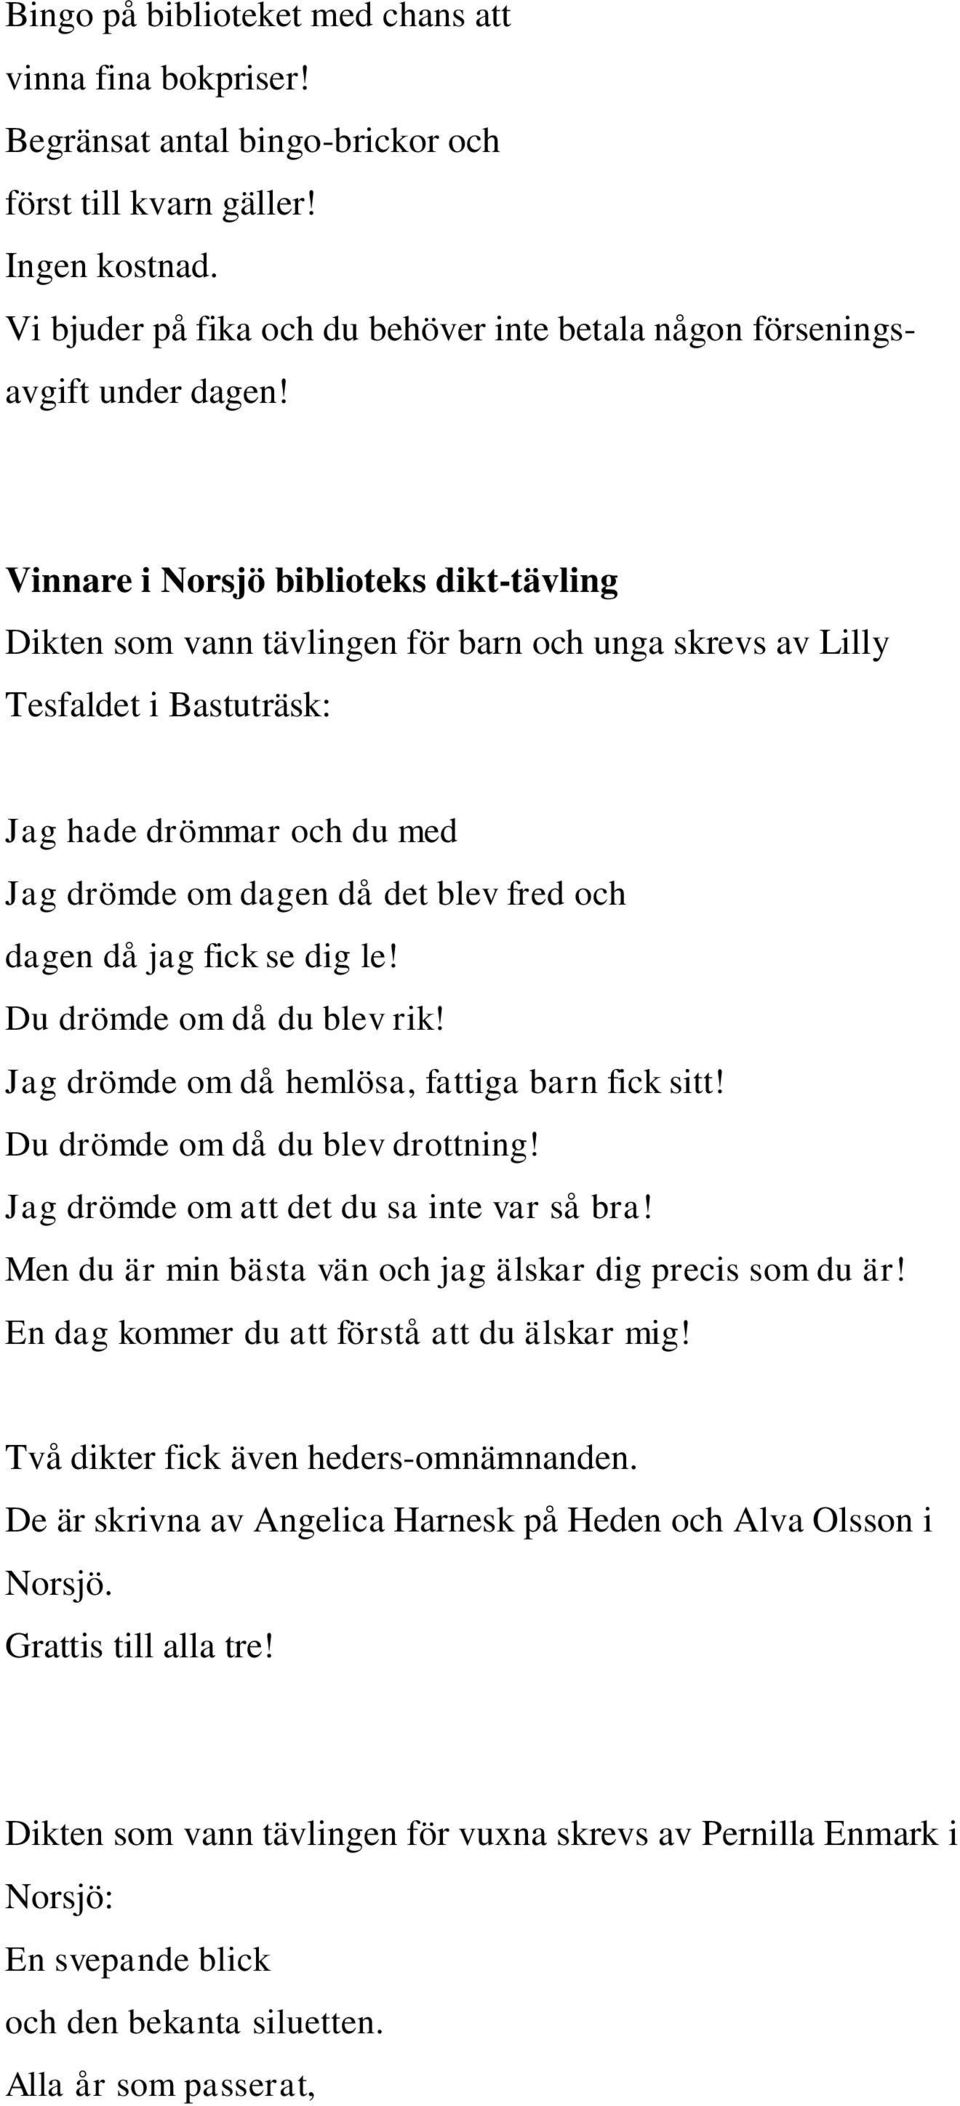 Vinnare i Norsjö biblioteks dikt-tävling Dikten som vann tävlingen för barn och unga skrevs av Lilly Tesfaldet i Bastuträsk: Jag hade drömmar och du med Jag drömde om dagen då det blev fred och dagen